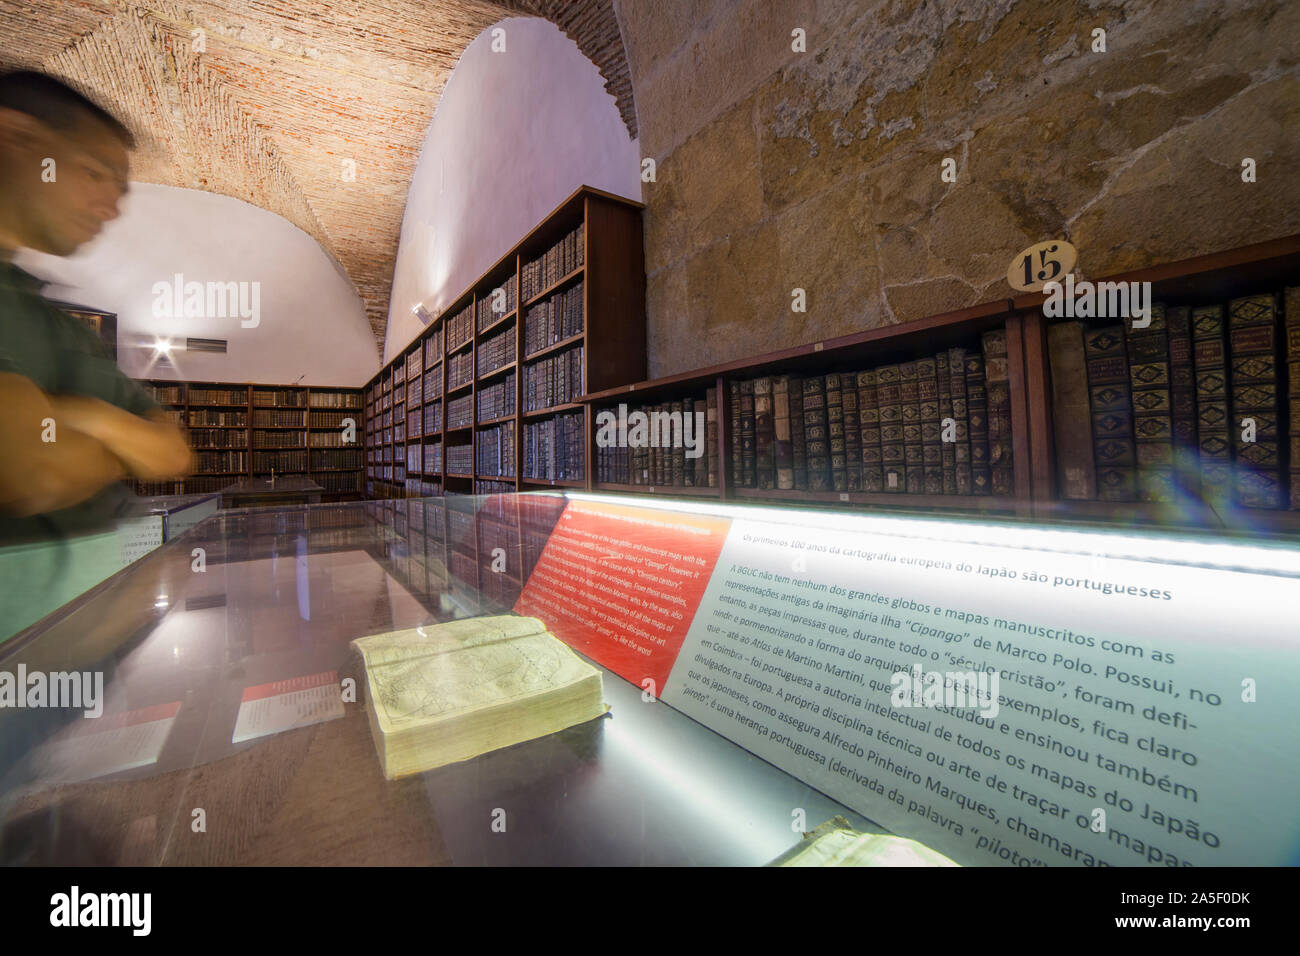 Coimbra, Portugal - Sept 6e 2019 : Bibliothèque johannique à l'intérieur. Visiteurs asiatiques observe display cabinet Banque D'Images